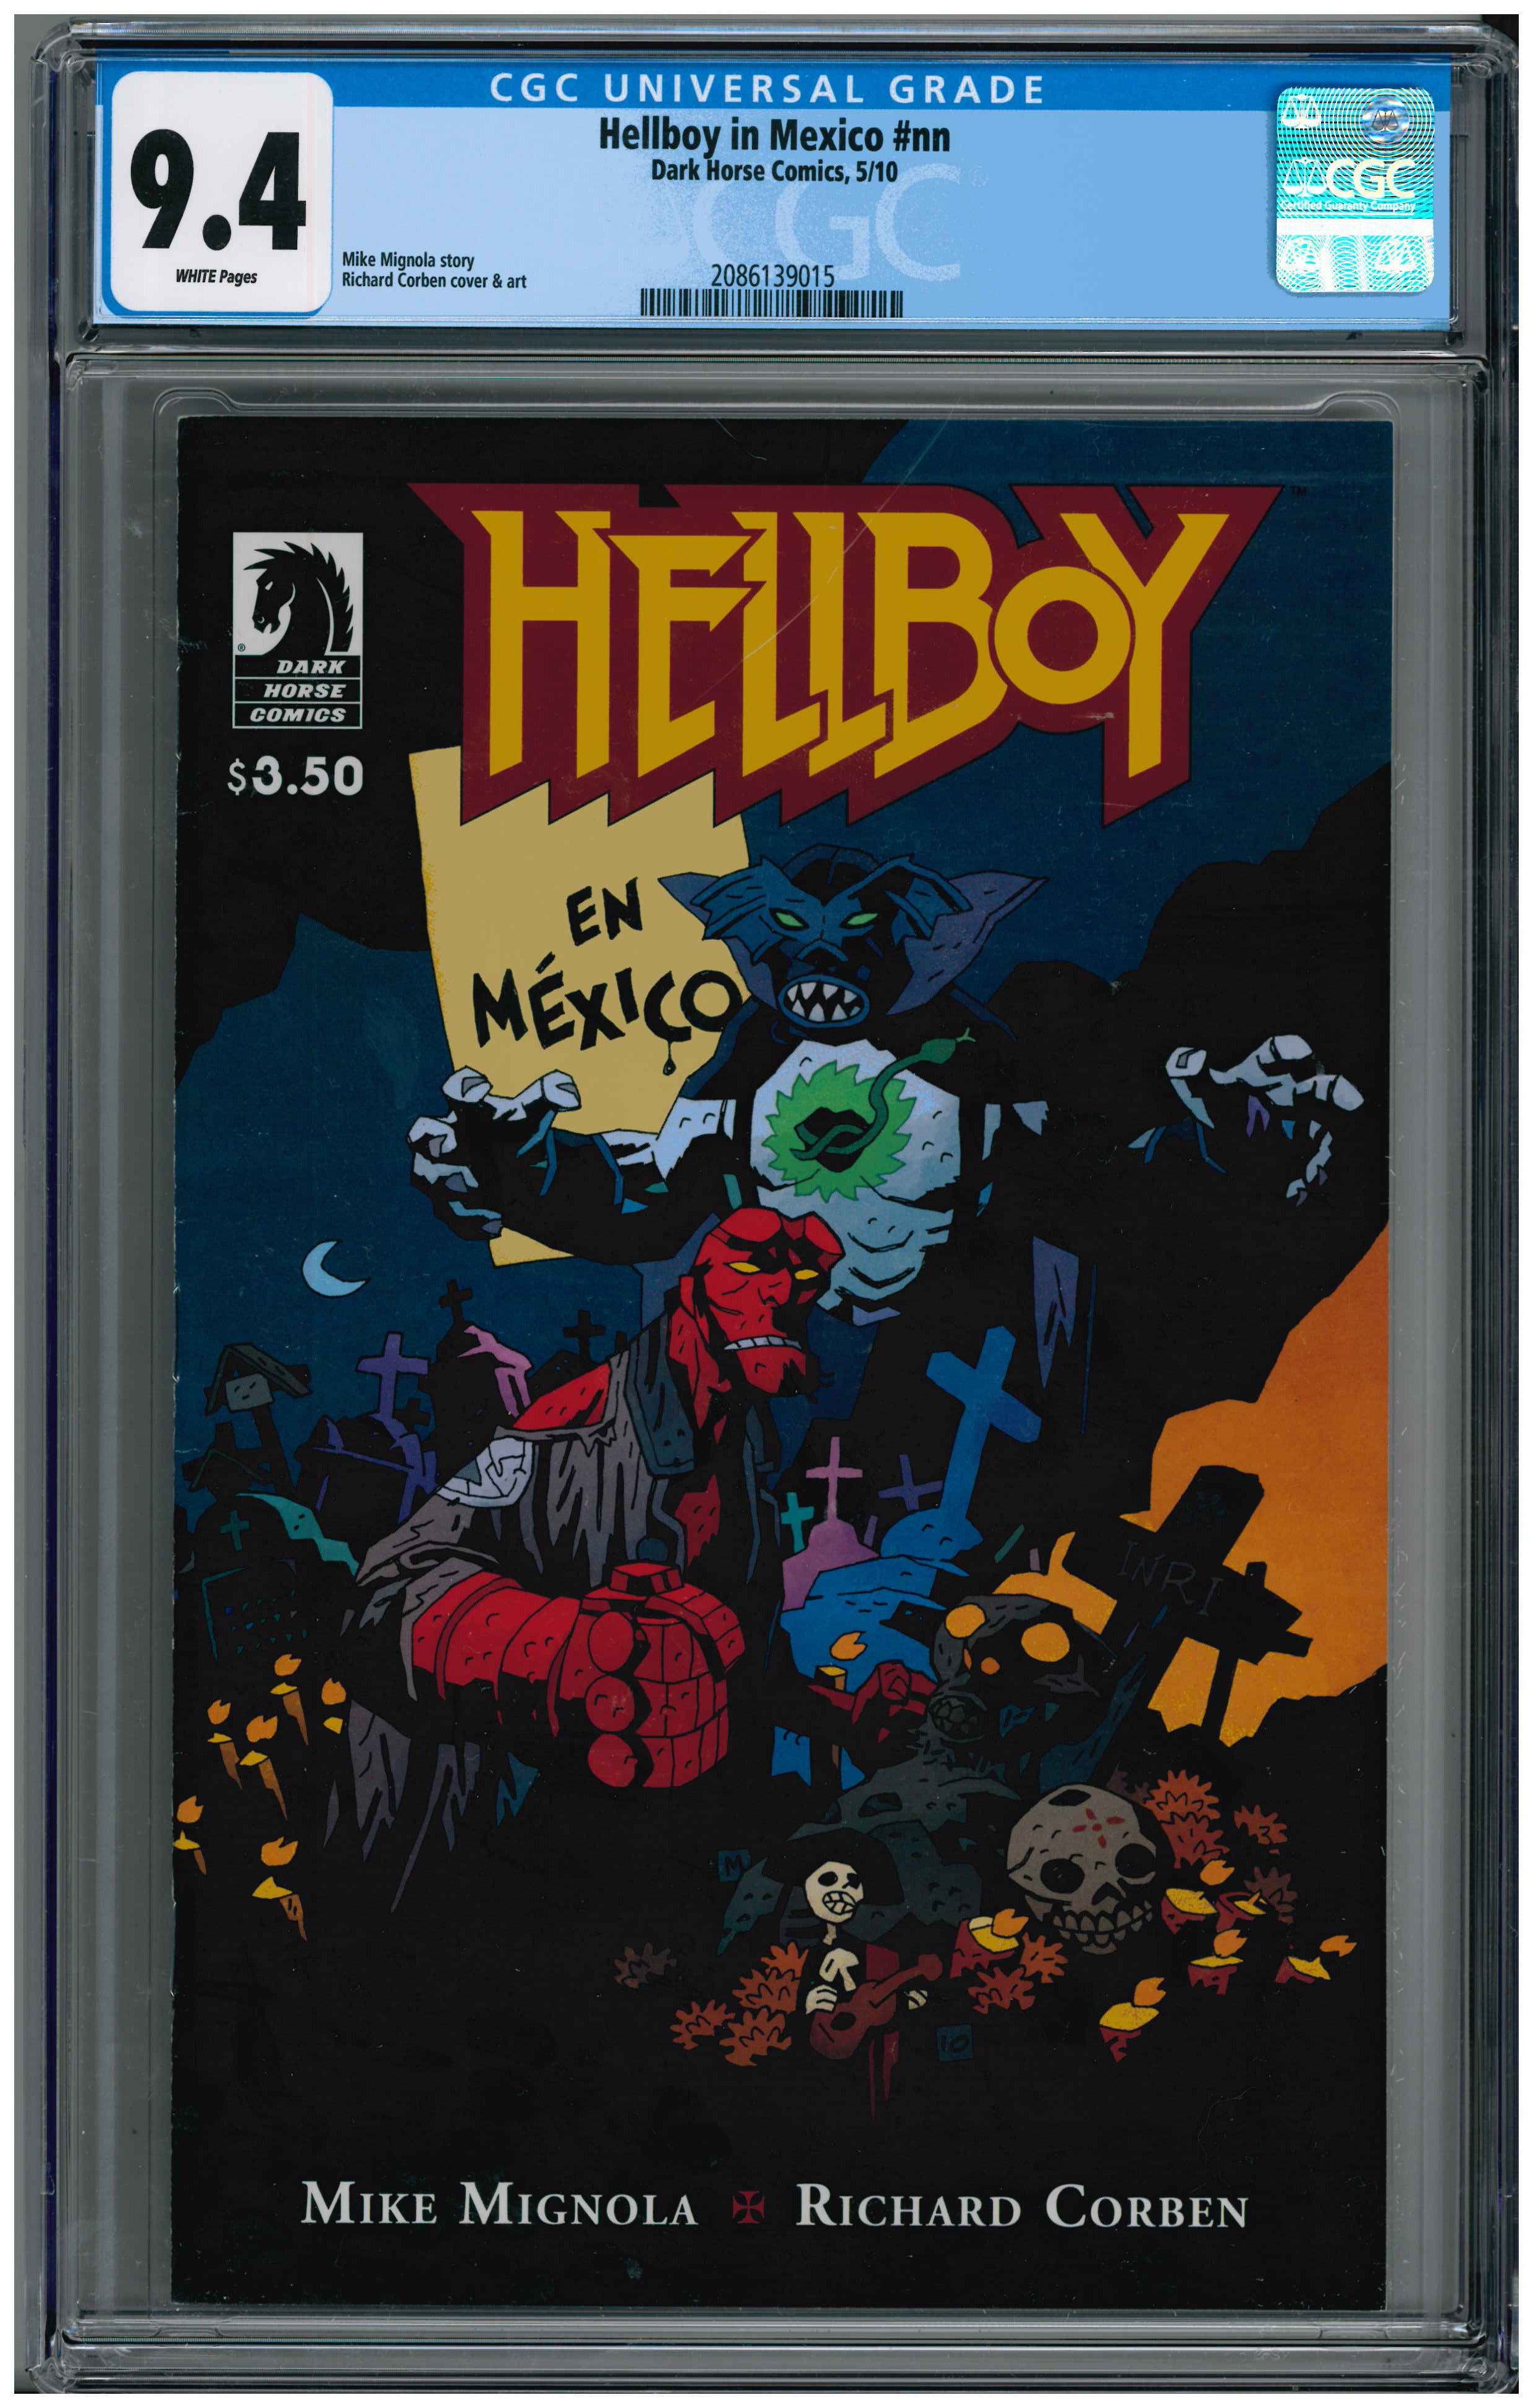 Hellboy in Mexico #nn